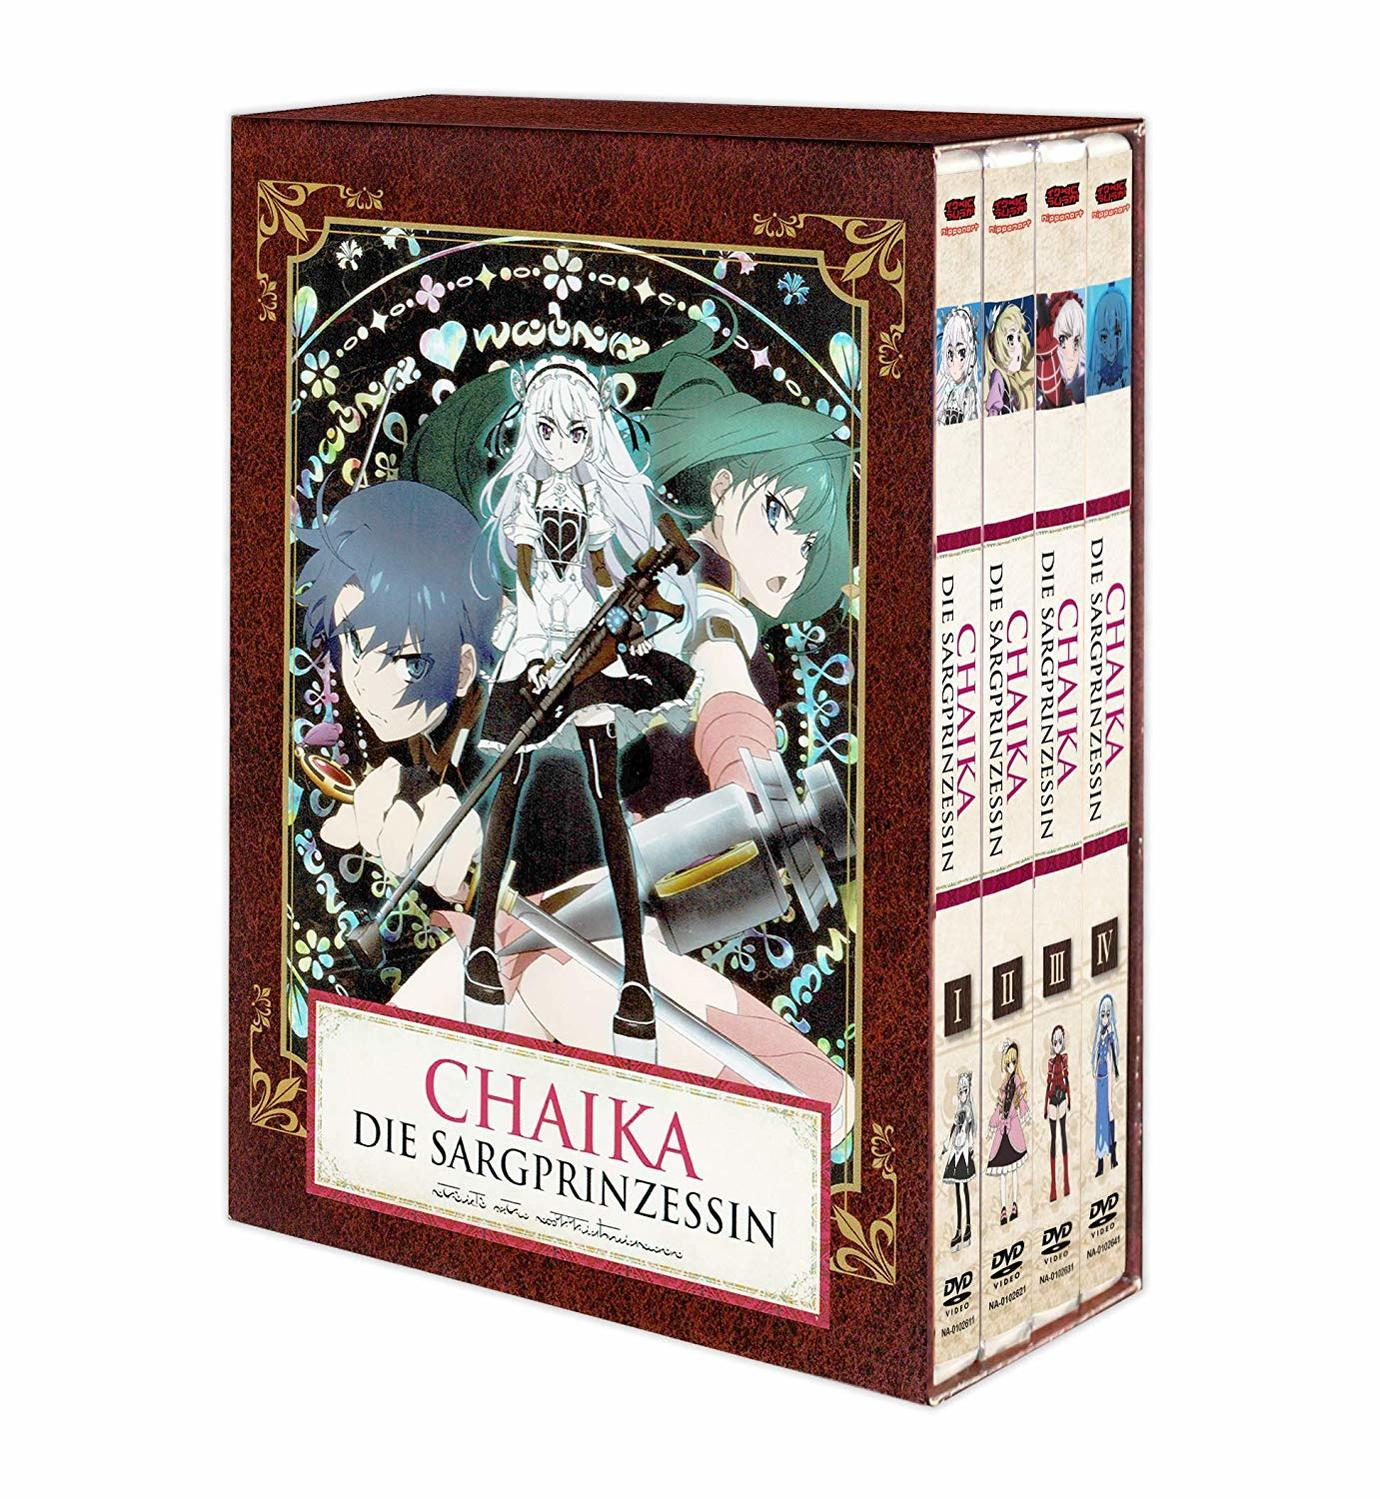 Chaika, die Staffel 1 Sargprinzessin - DVD